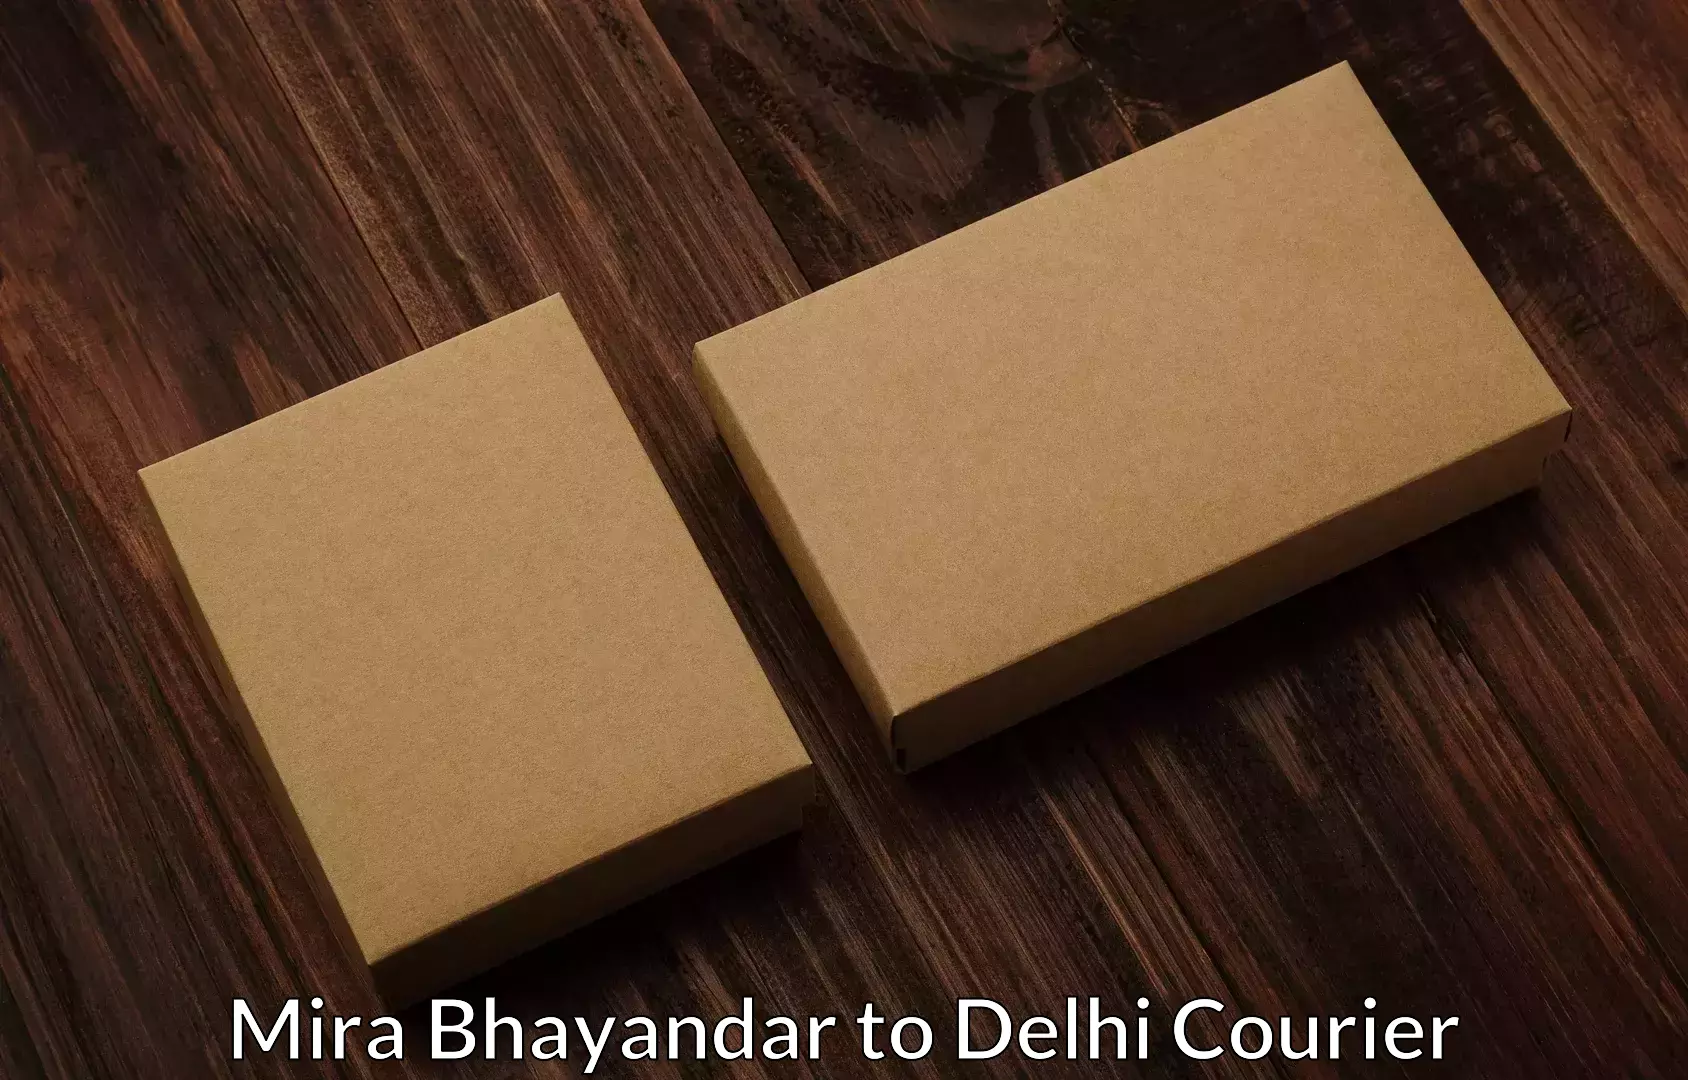 Hassle-free relocation Mira Bhayandar to Jawaharlal Nehru University New Delhi